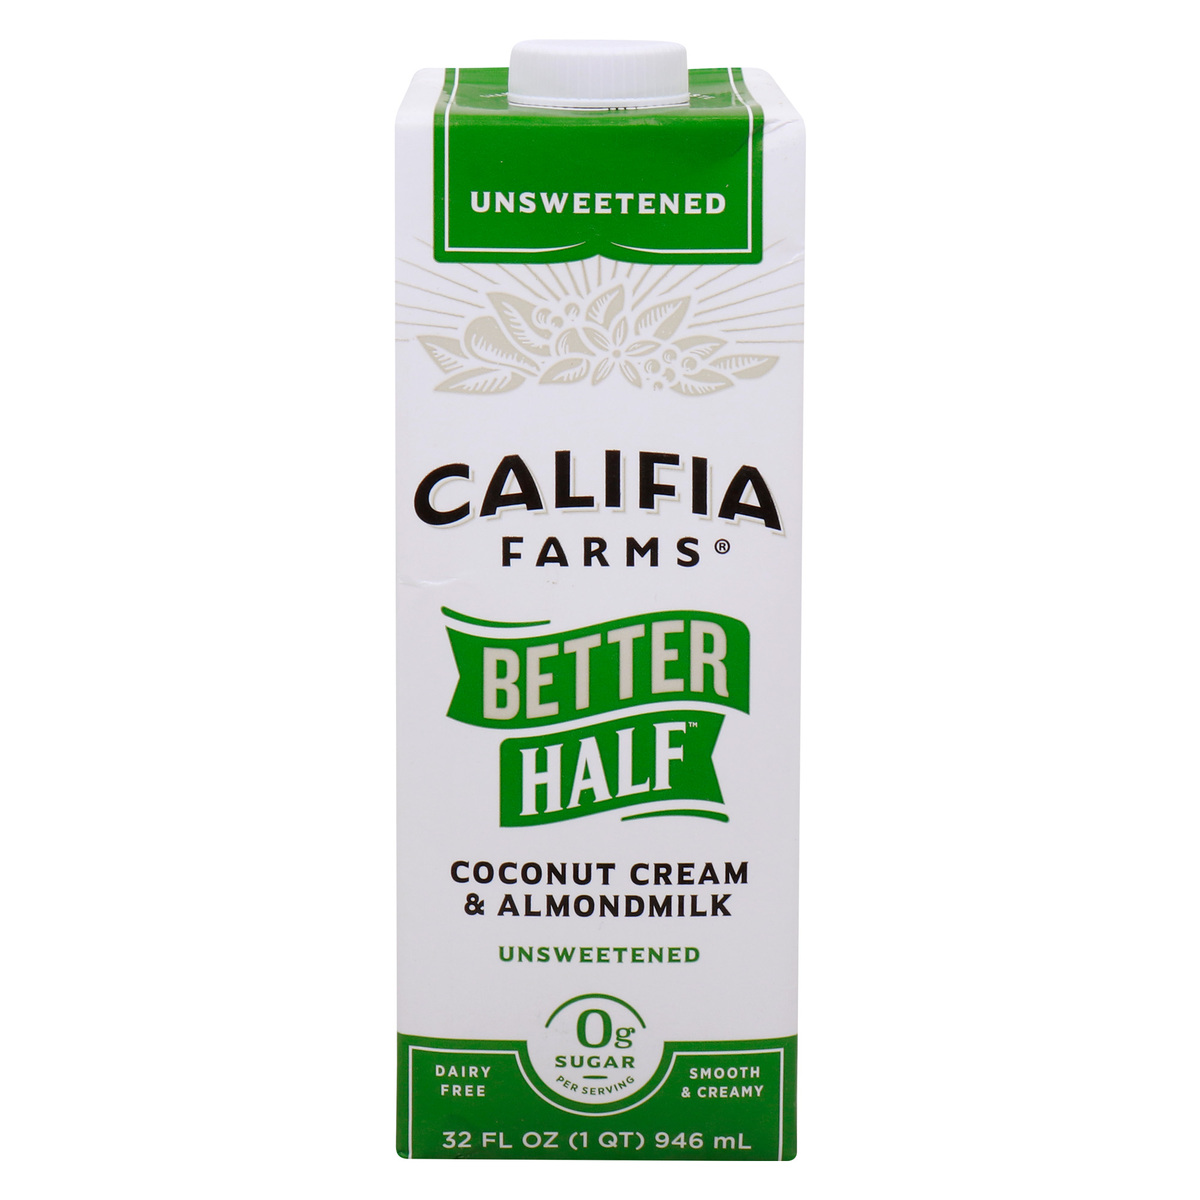 Califia Farms Better Half Coconut Cream and Almond Milk Unsweetened, 946 ml